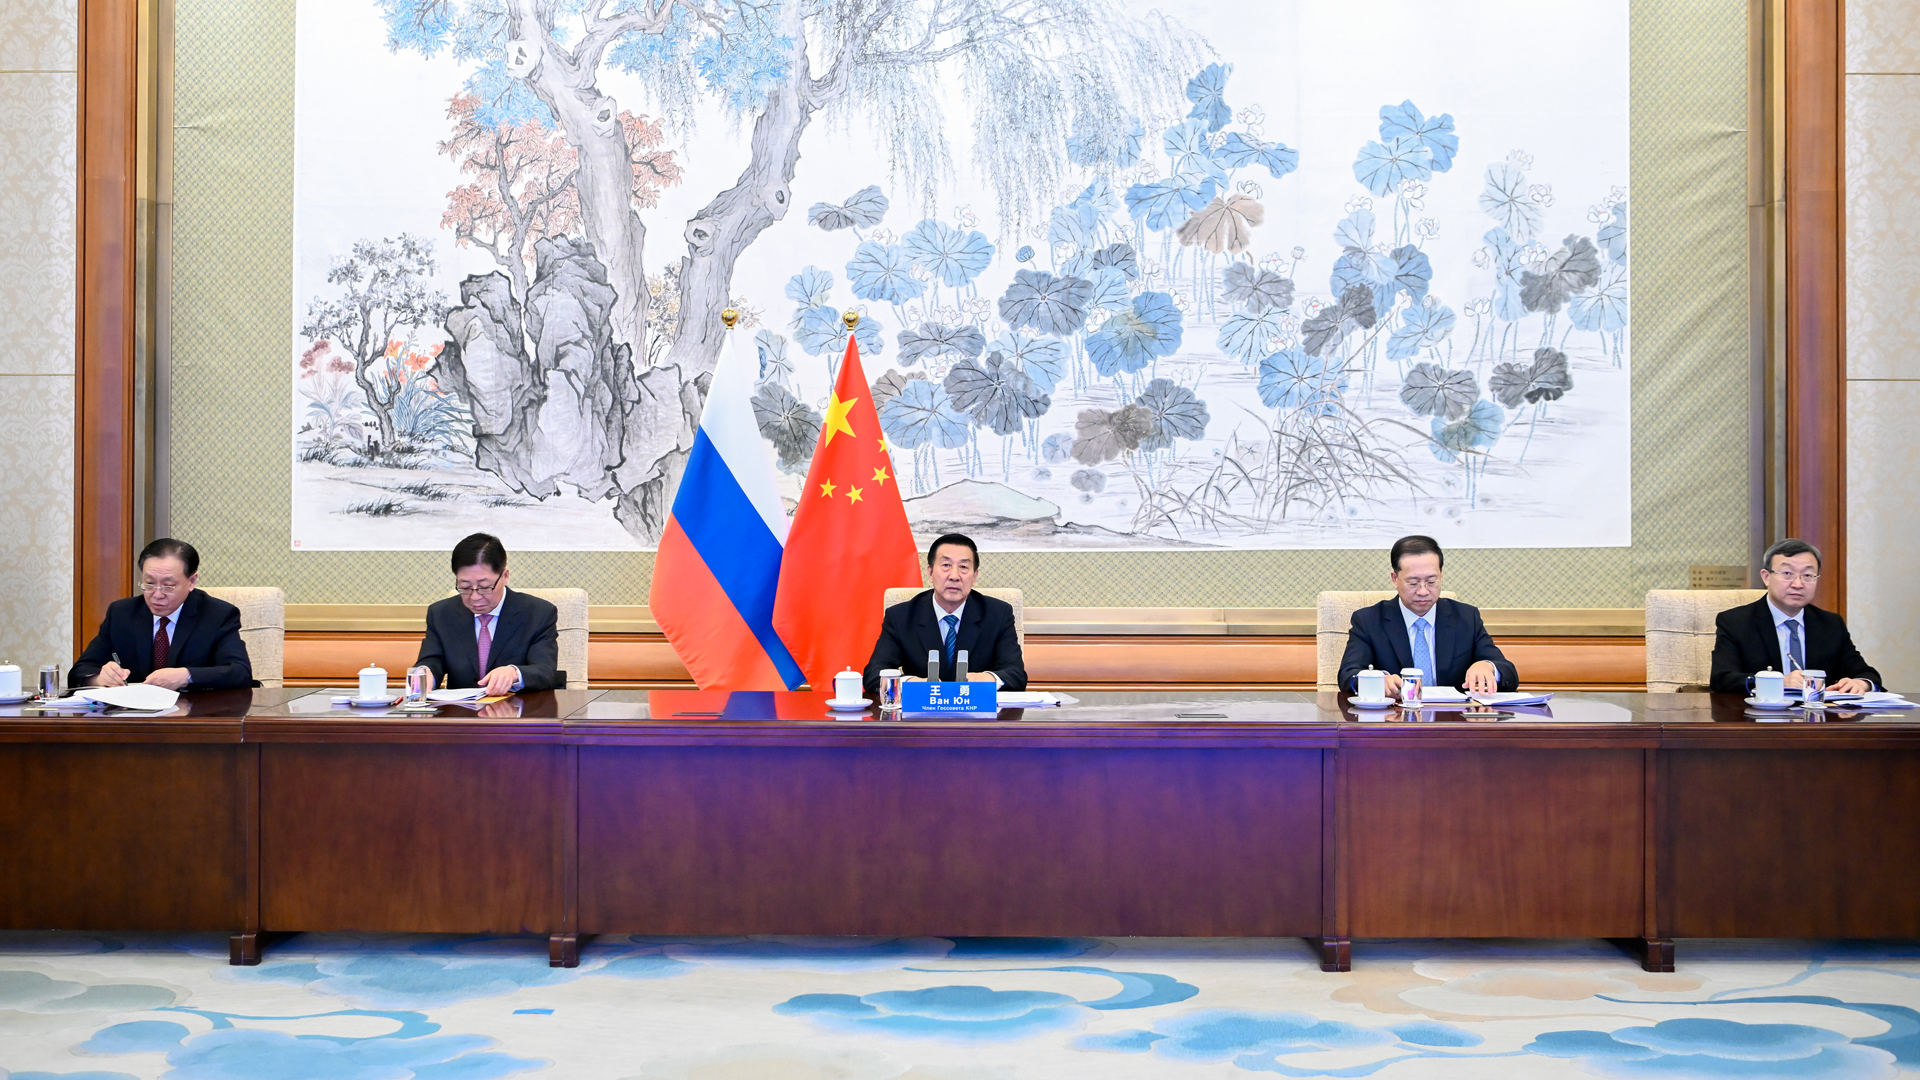 Wang Yong und eine Delegation vor Chinas und Russlands Staatsflaggen.